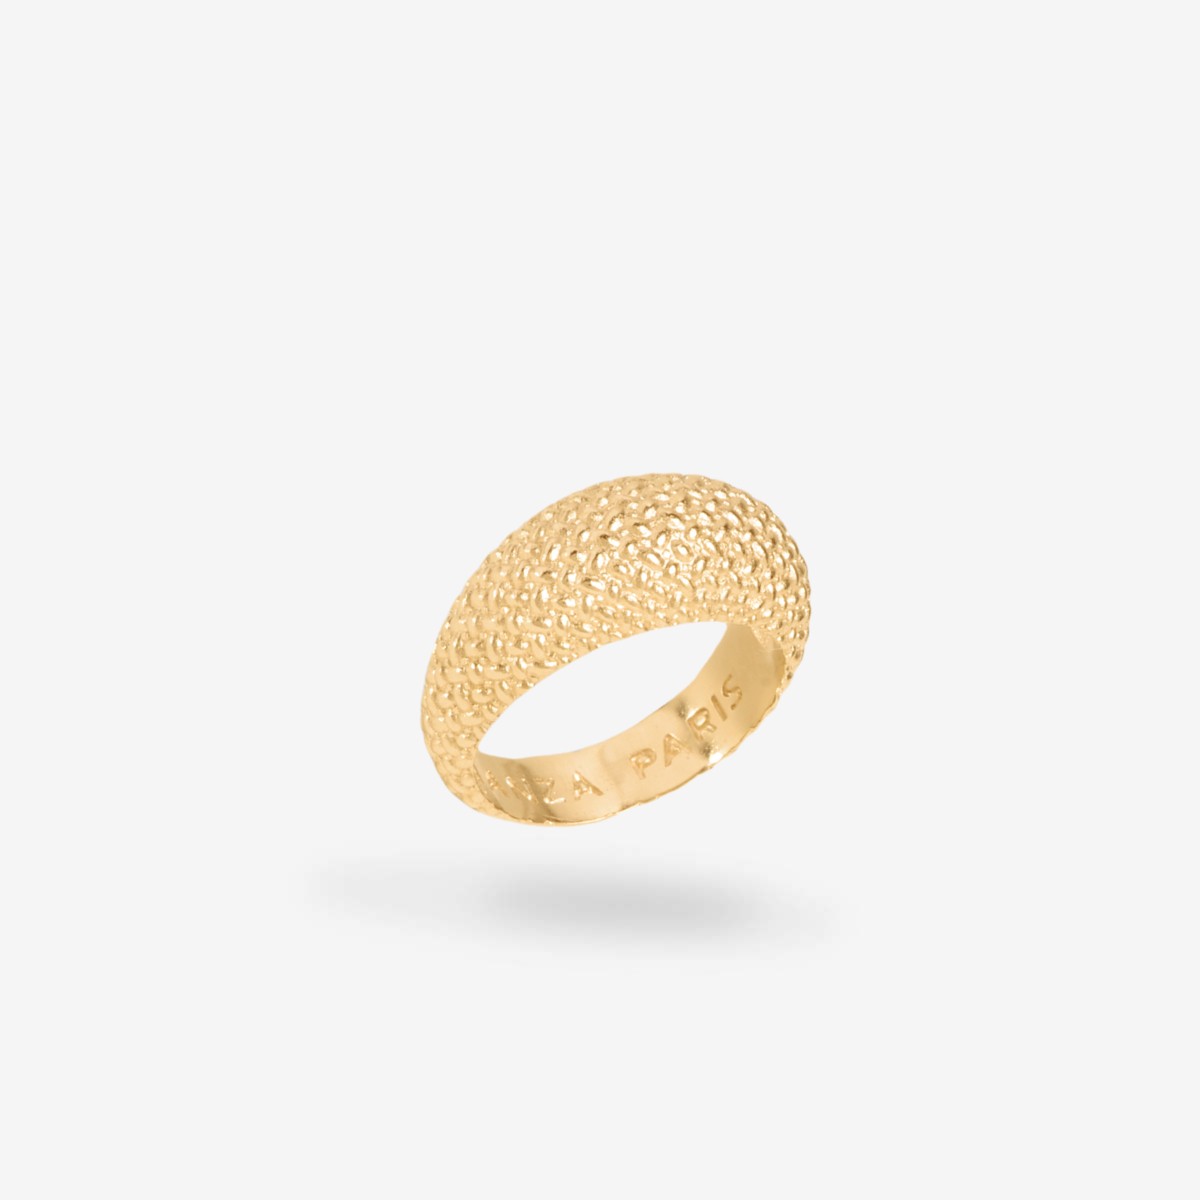 Mini-Gisèle - Ringe - 24k vergoldet